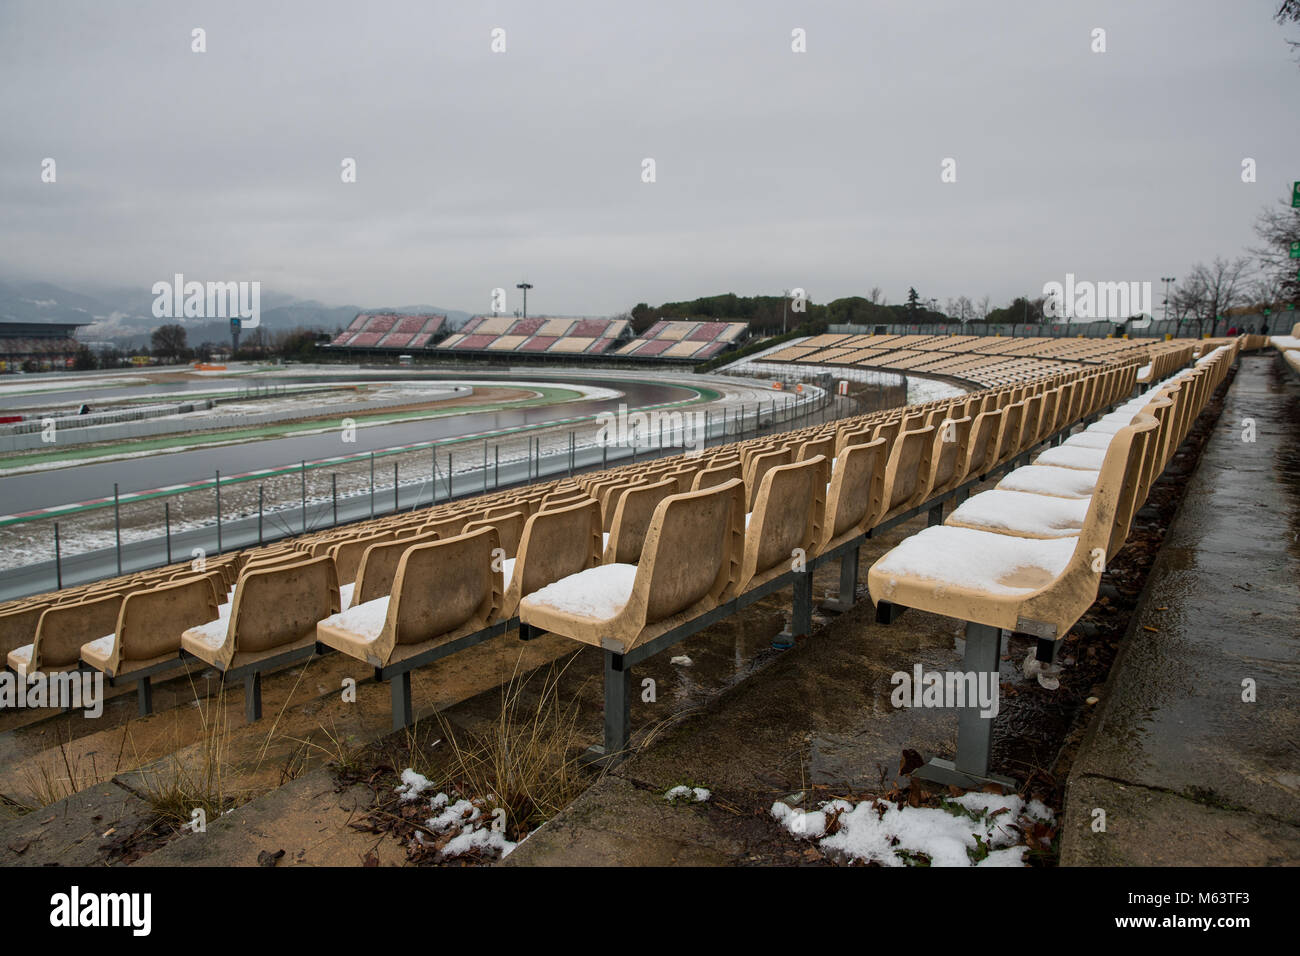 Montmelo, España. 28 Feb, 2018. La tercera jornada de pruebas de invierno con F1 en el Circuit de Catalunya de Barcelona. Detalles de nieve en el circuito. Crédito: UKKO Images/Alamy Live News Foto de stock